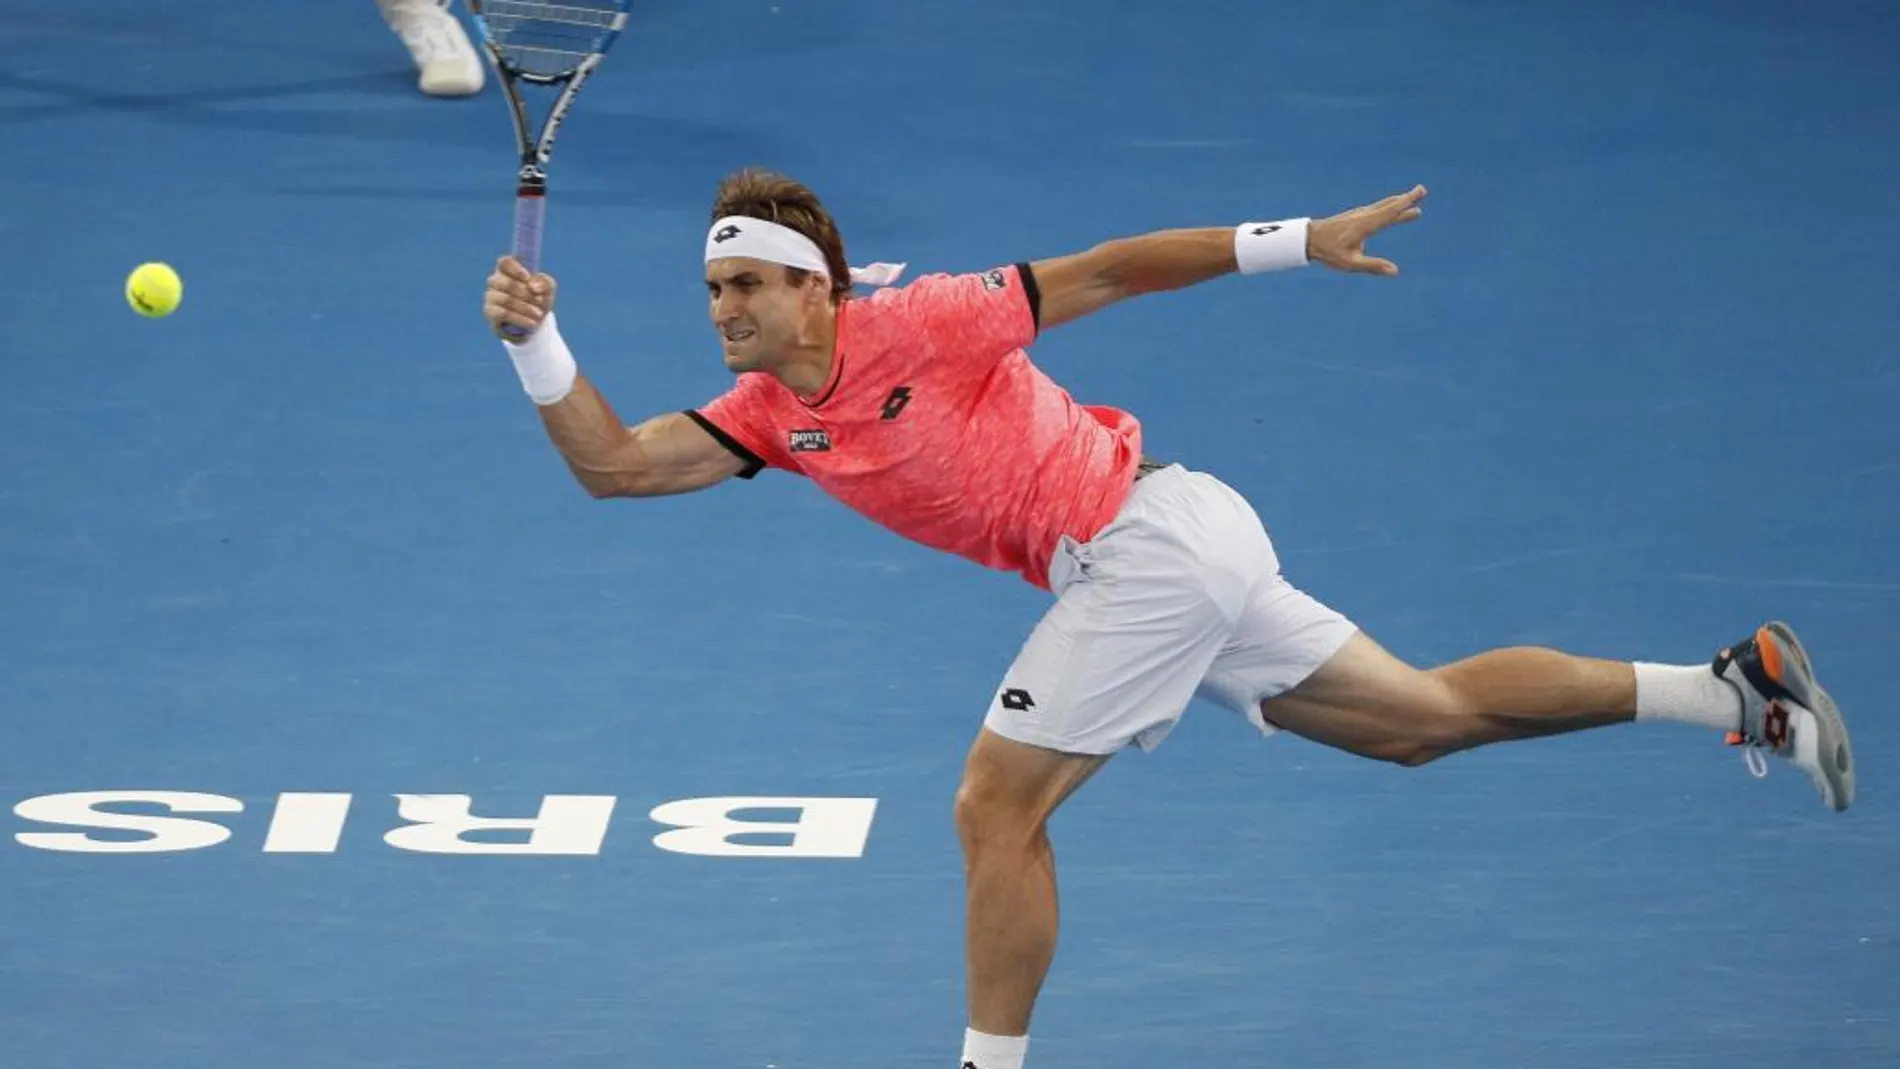 El tenista español David Ferrer golpea la bola durante su partido de la segunda ronda del torneo internacional de Brisbane